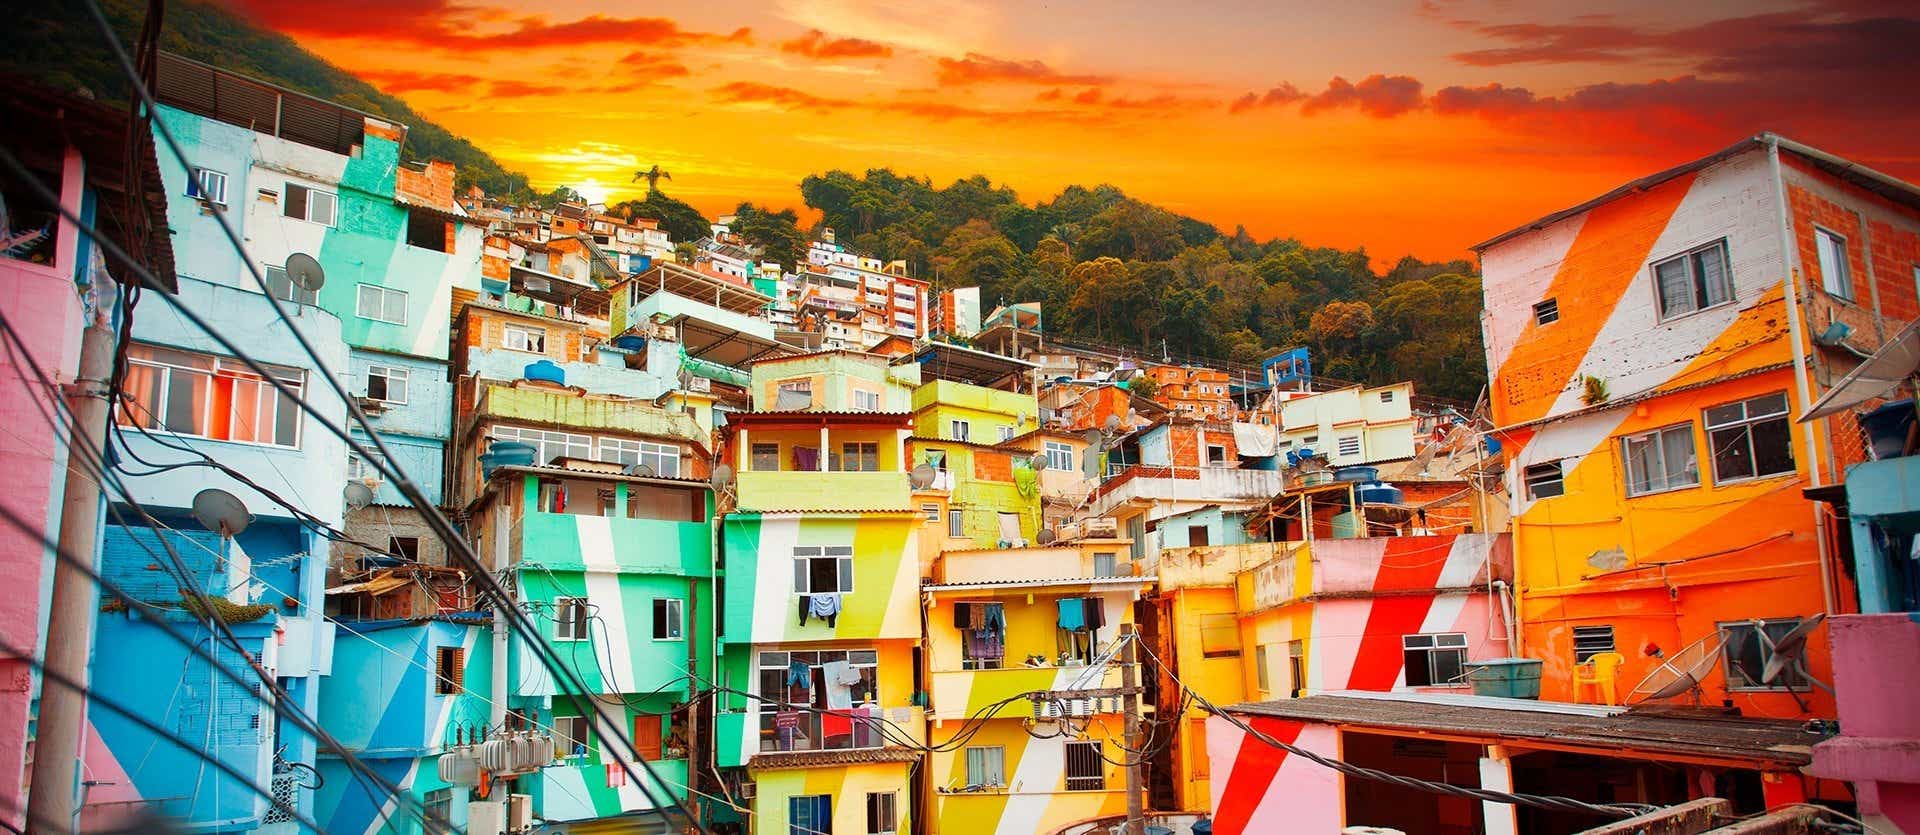 Santa Marta Favela <span class="iconos separador"></span> Rio de Janeiro